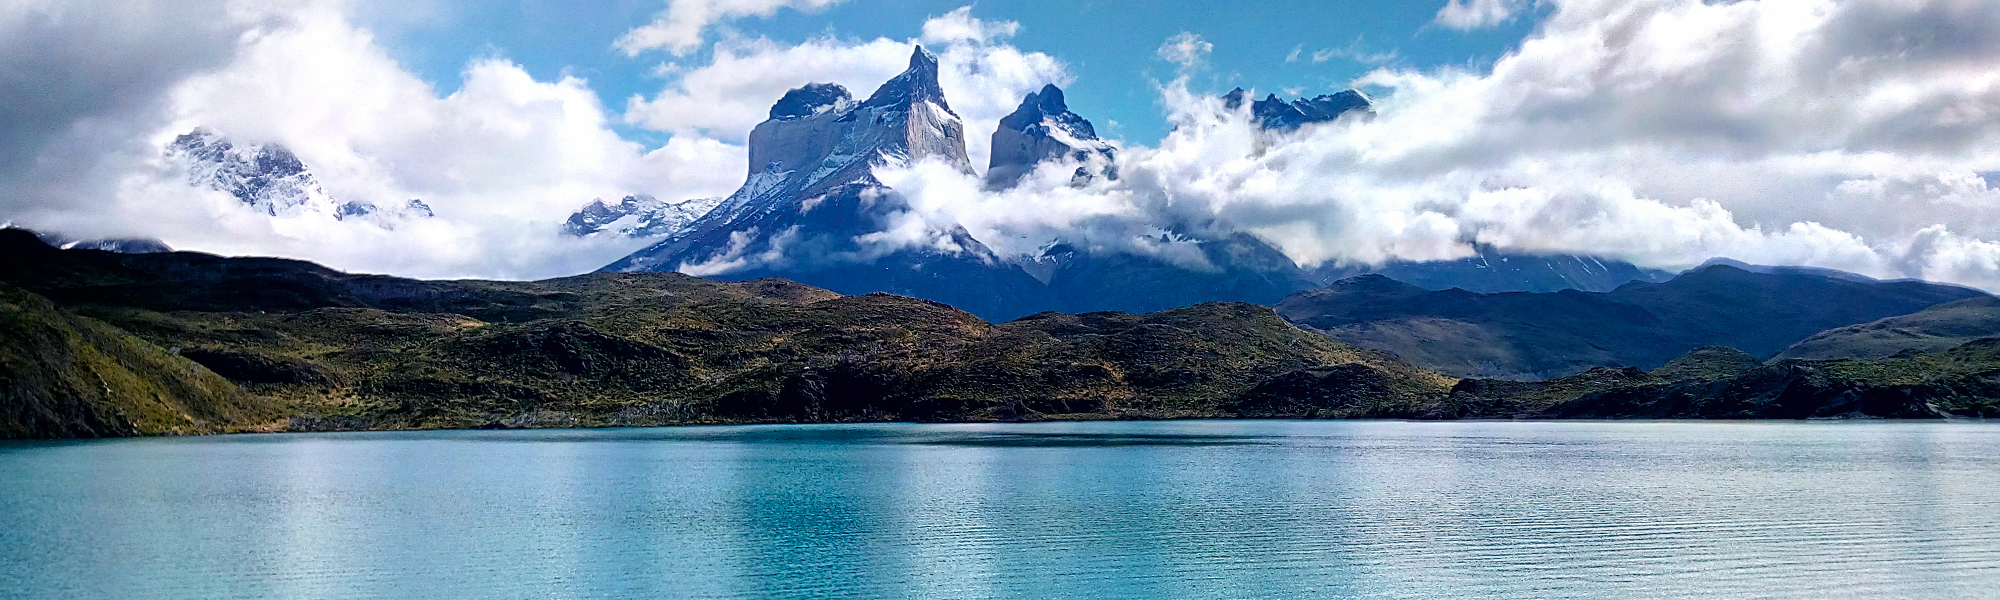 Voyage en Patagonie © Paul Le Coz